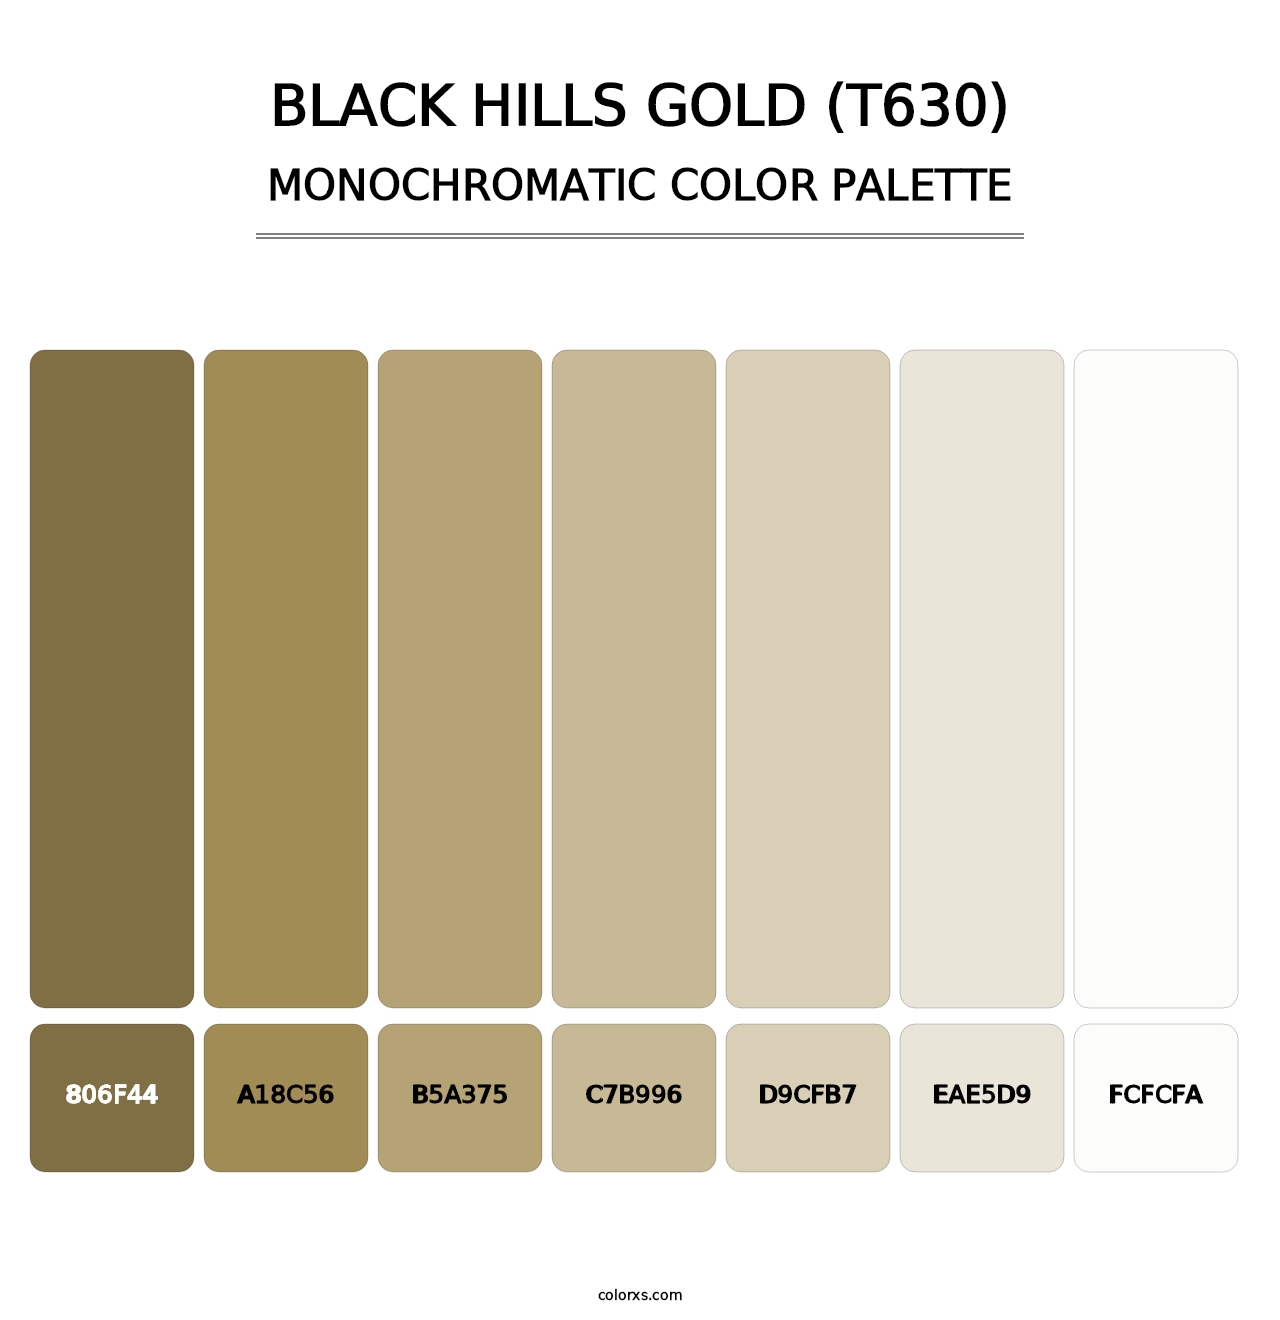 Black Hills Gold (T630) - Monochromatic Color Palette